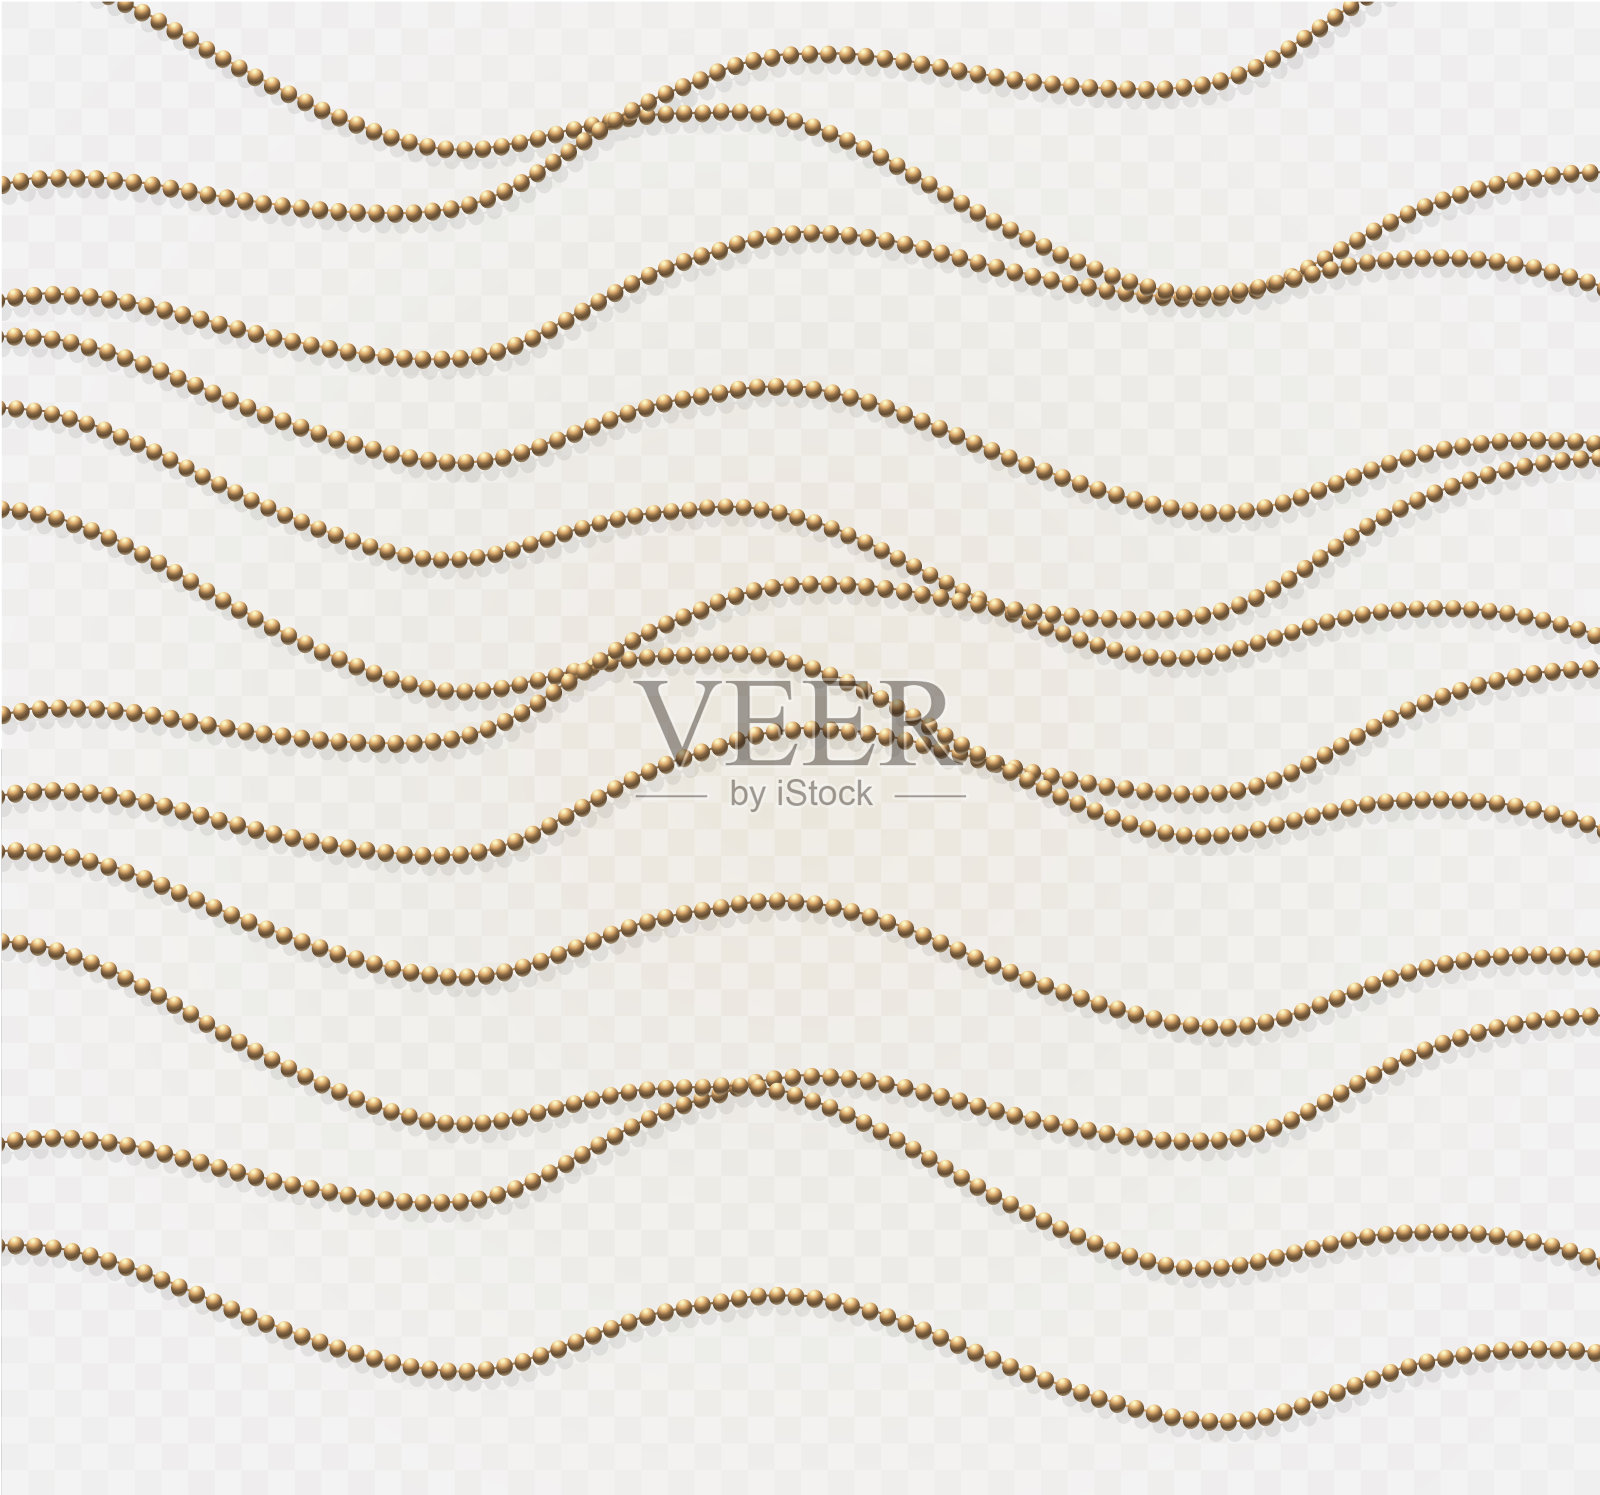 一条美丽的金色链条。串珠是真实绝缘的。金珠设计的装饰元素。矢量图设计元素图片